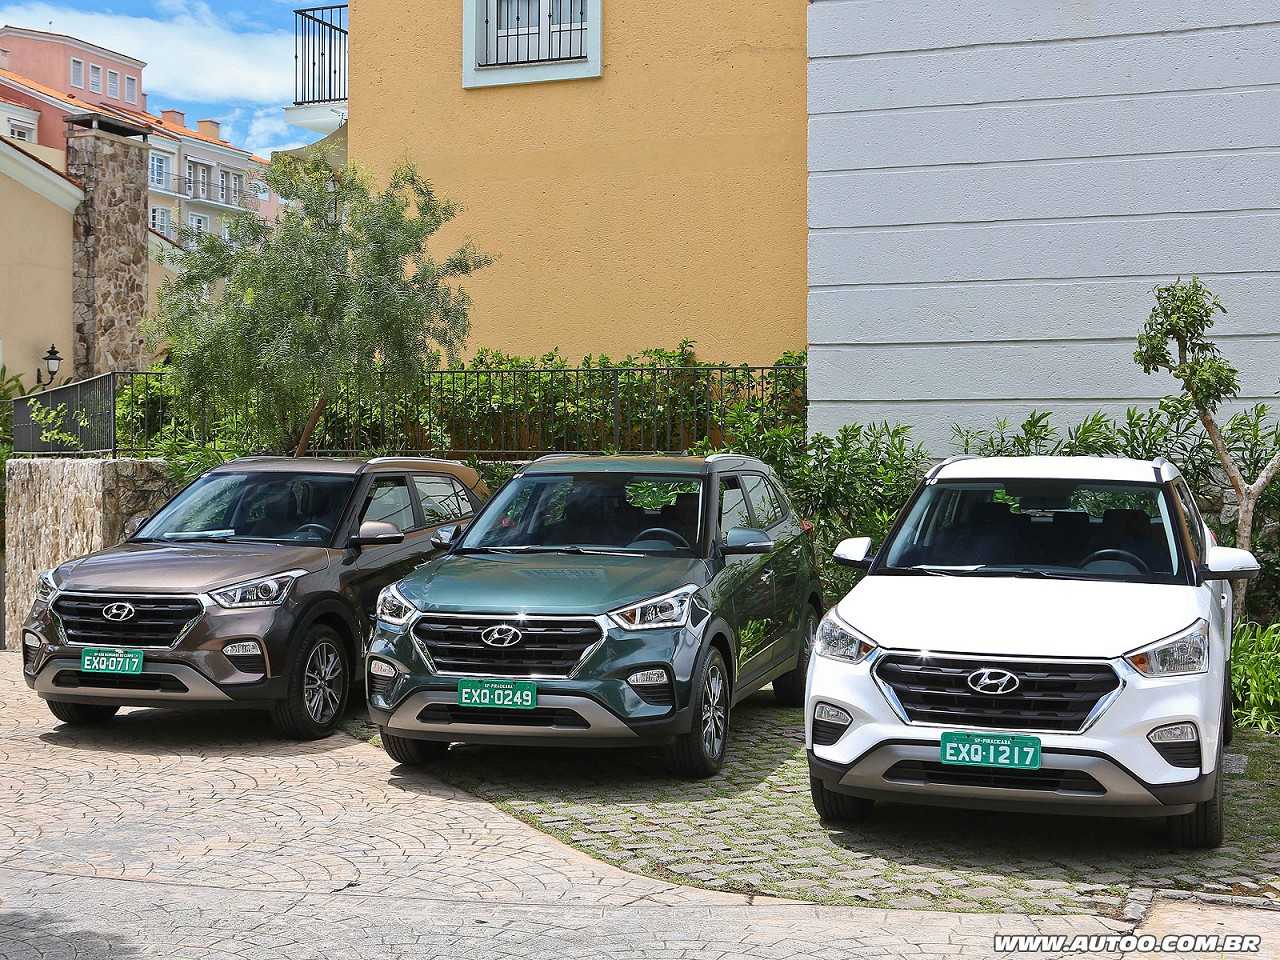 Renault Fluence, Toyota Corolla e Hyundai Creta: qual é o melhor carro para compra com isenção?